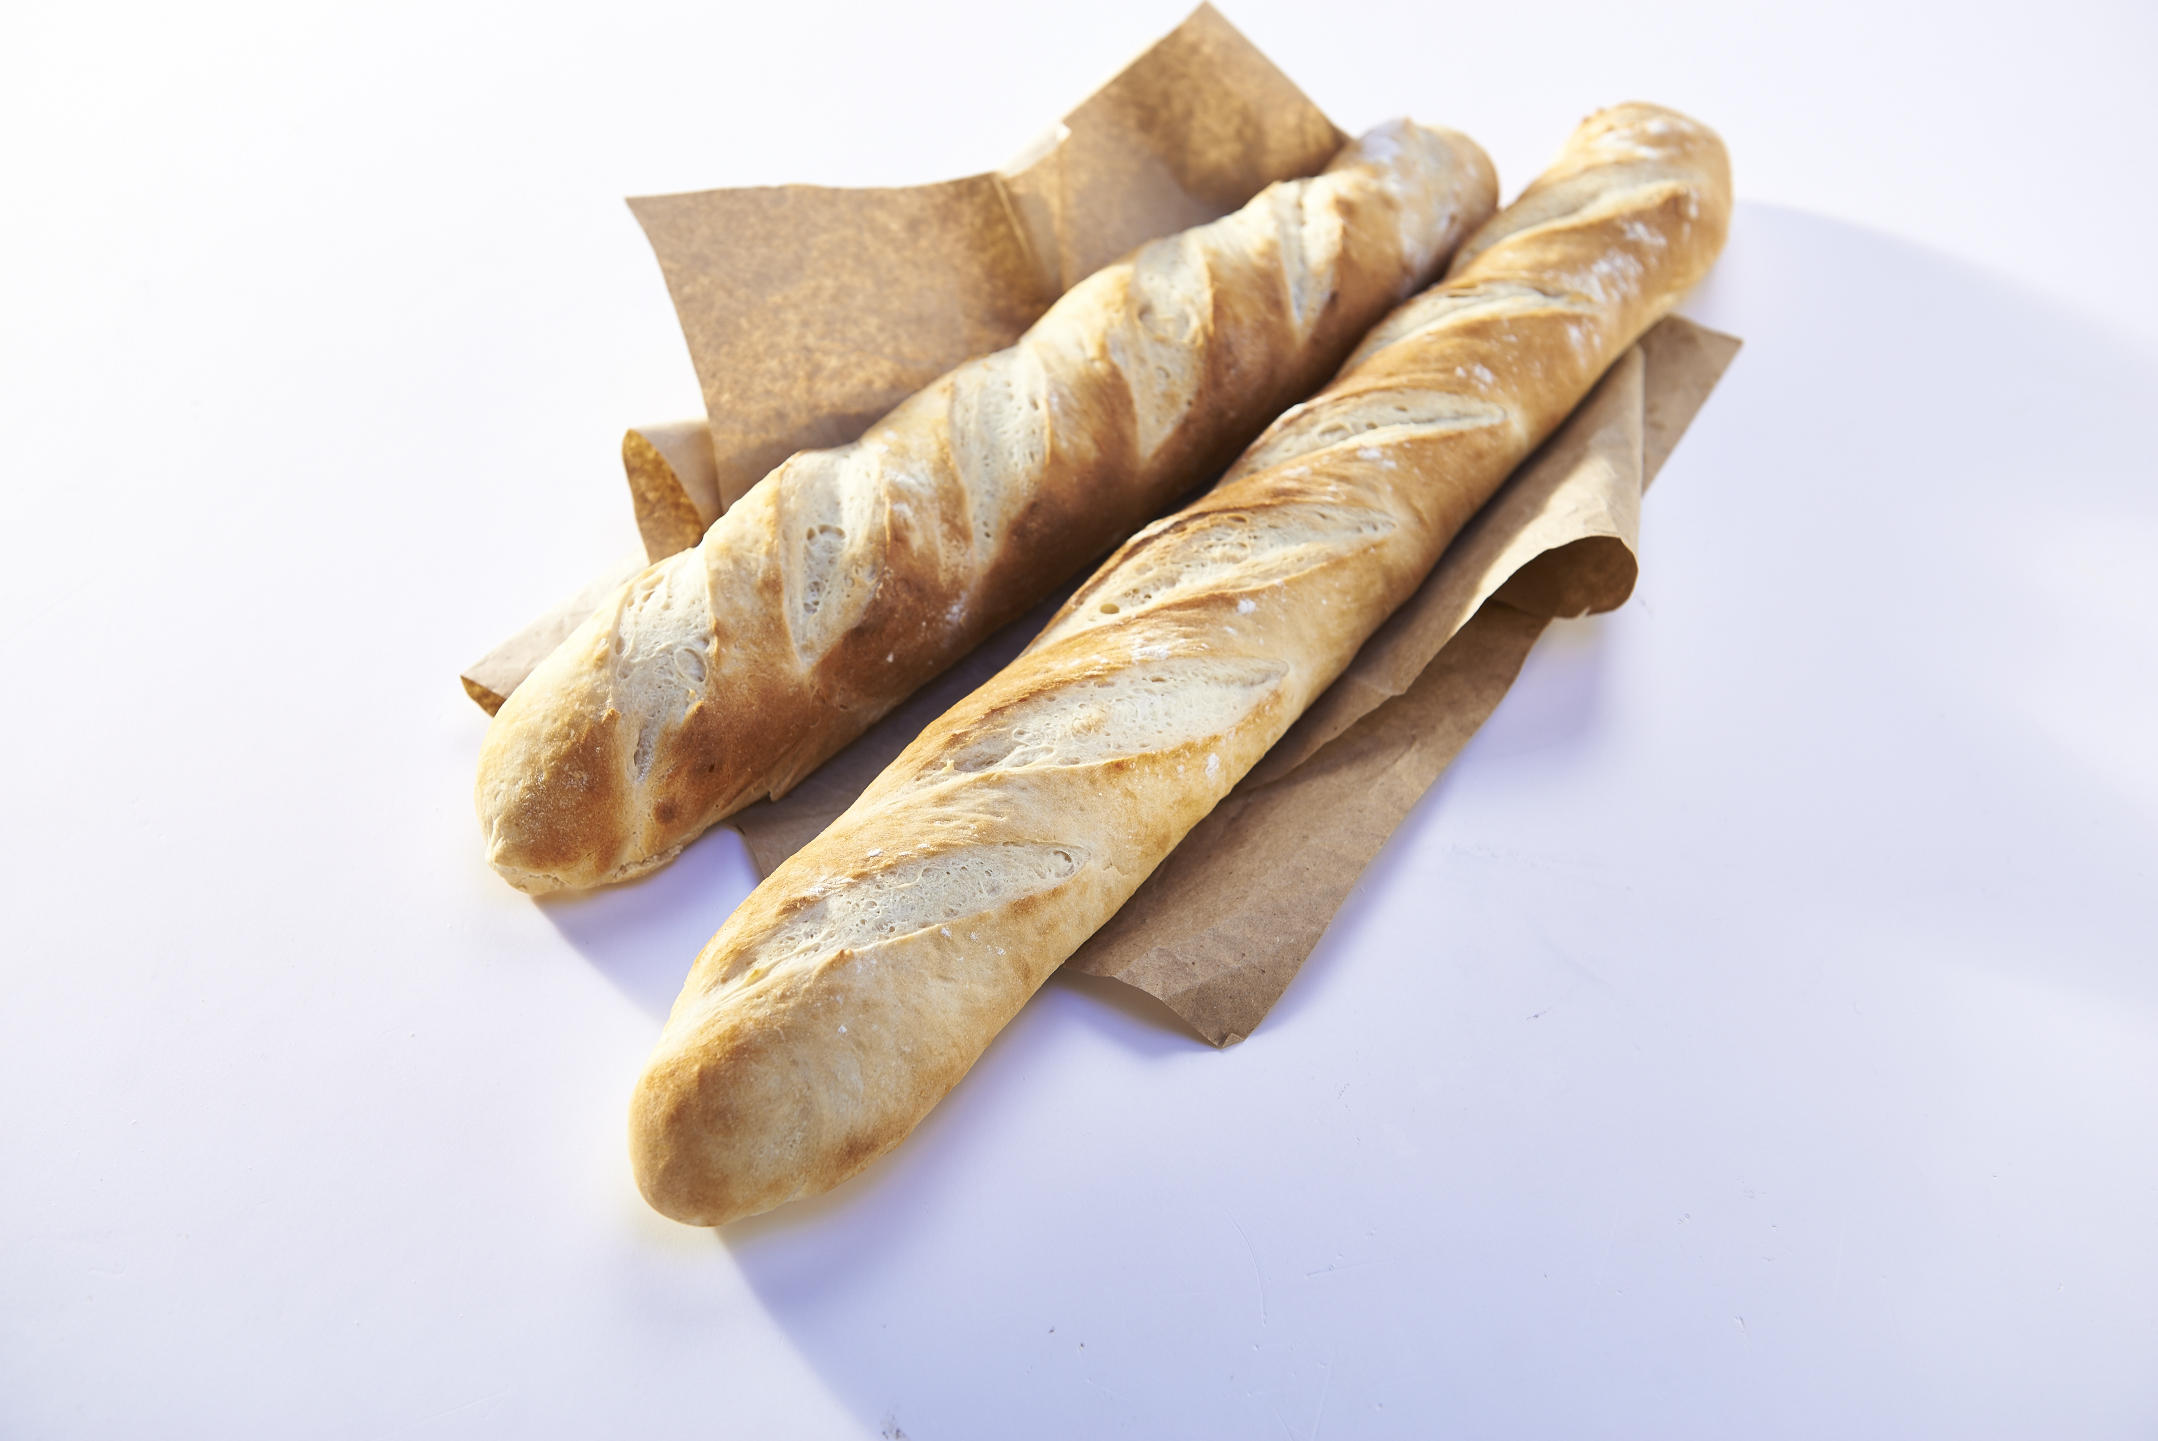 La baguette francesa es parte del patrimonio de sabores del mundo